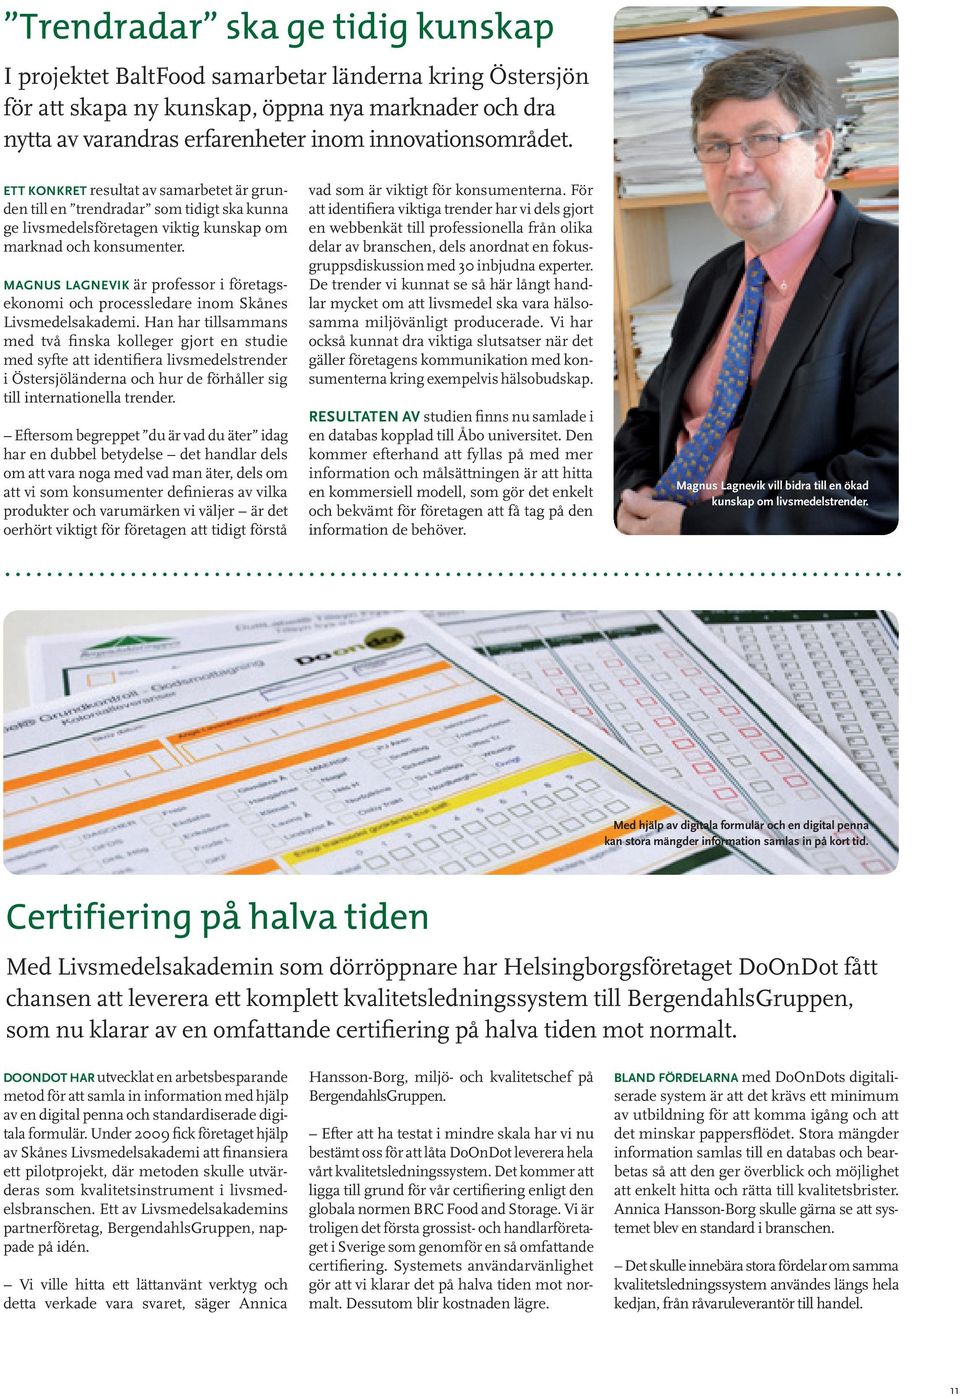 MAGNUS LAGNEVIK är professor i företagsekonomi och processledare inom Skånes Livsmedelsakademi.